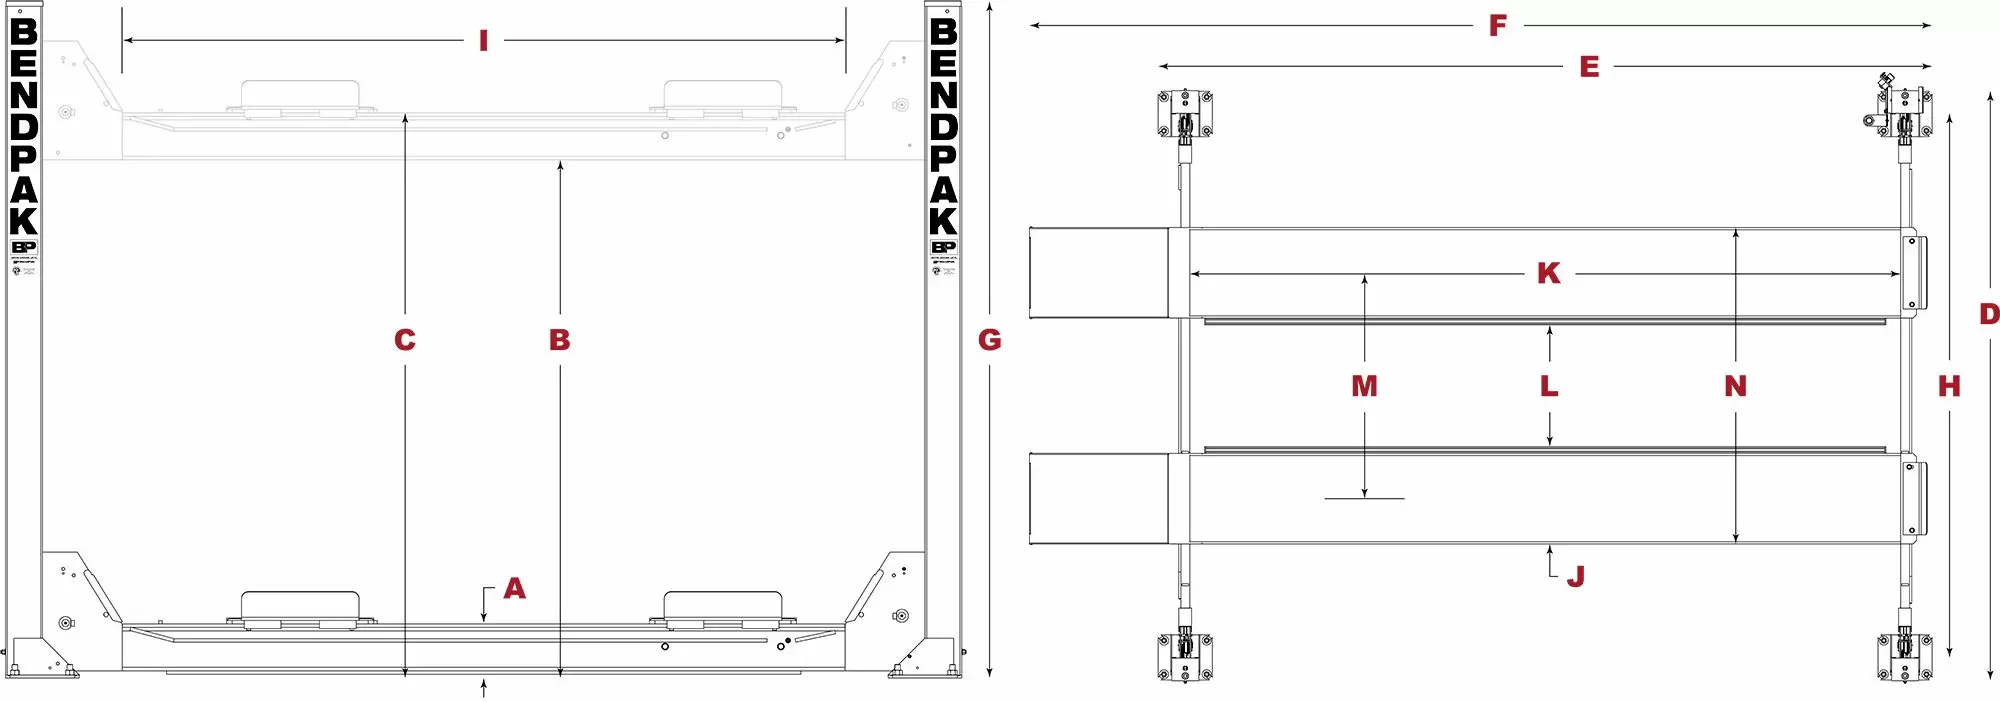 BendPak-HDS-14-Series-Specifications-Diagram_jpg (1)